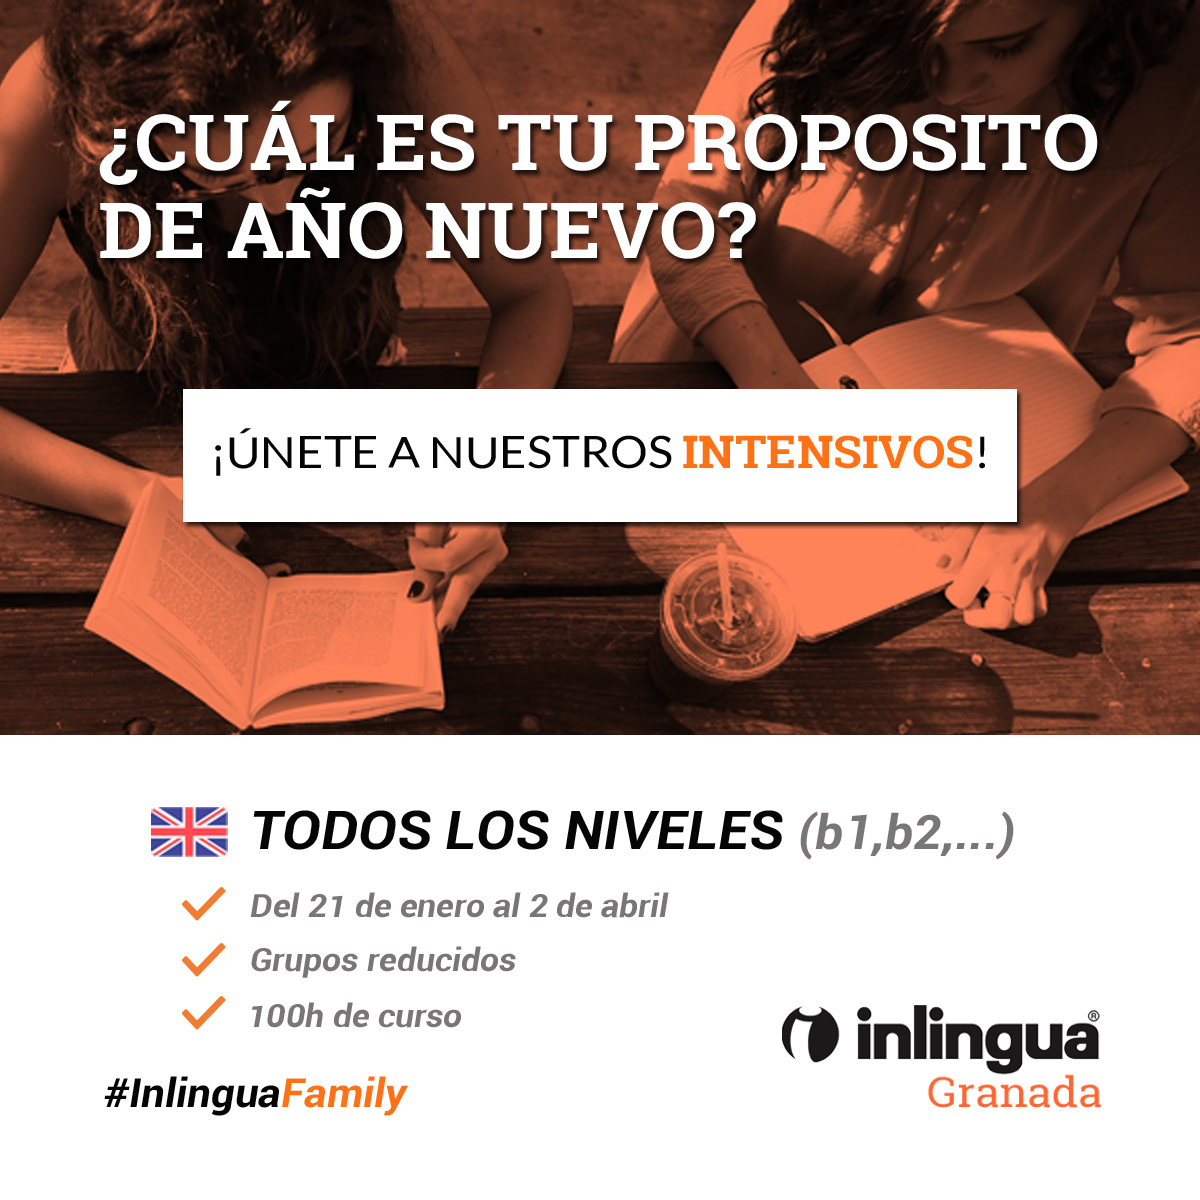 Alianza con Inlingua Granada con beneficios para nuestros alumnos